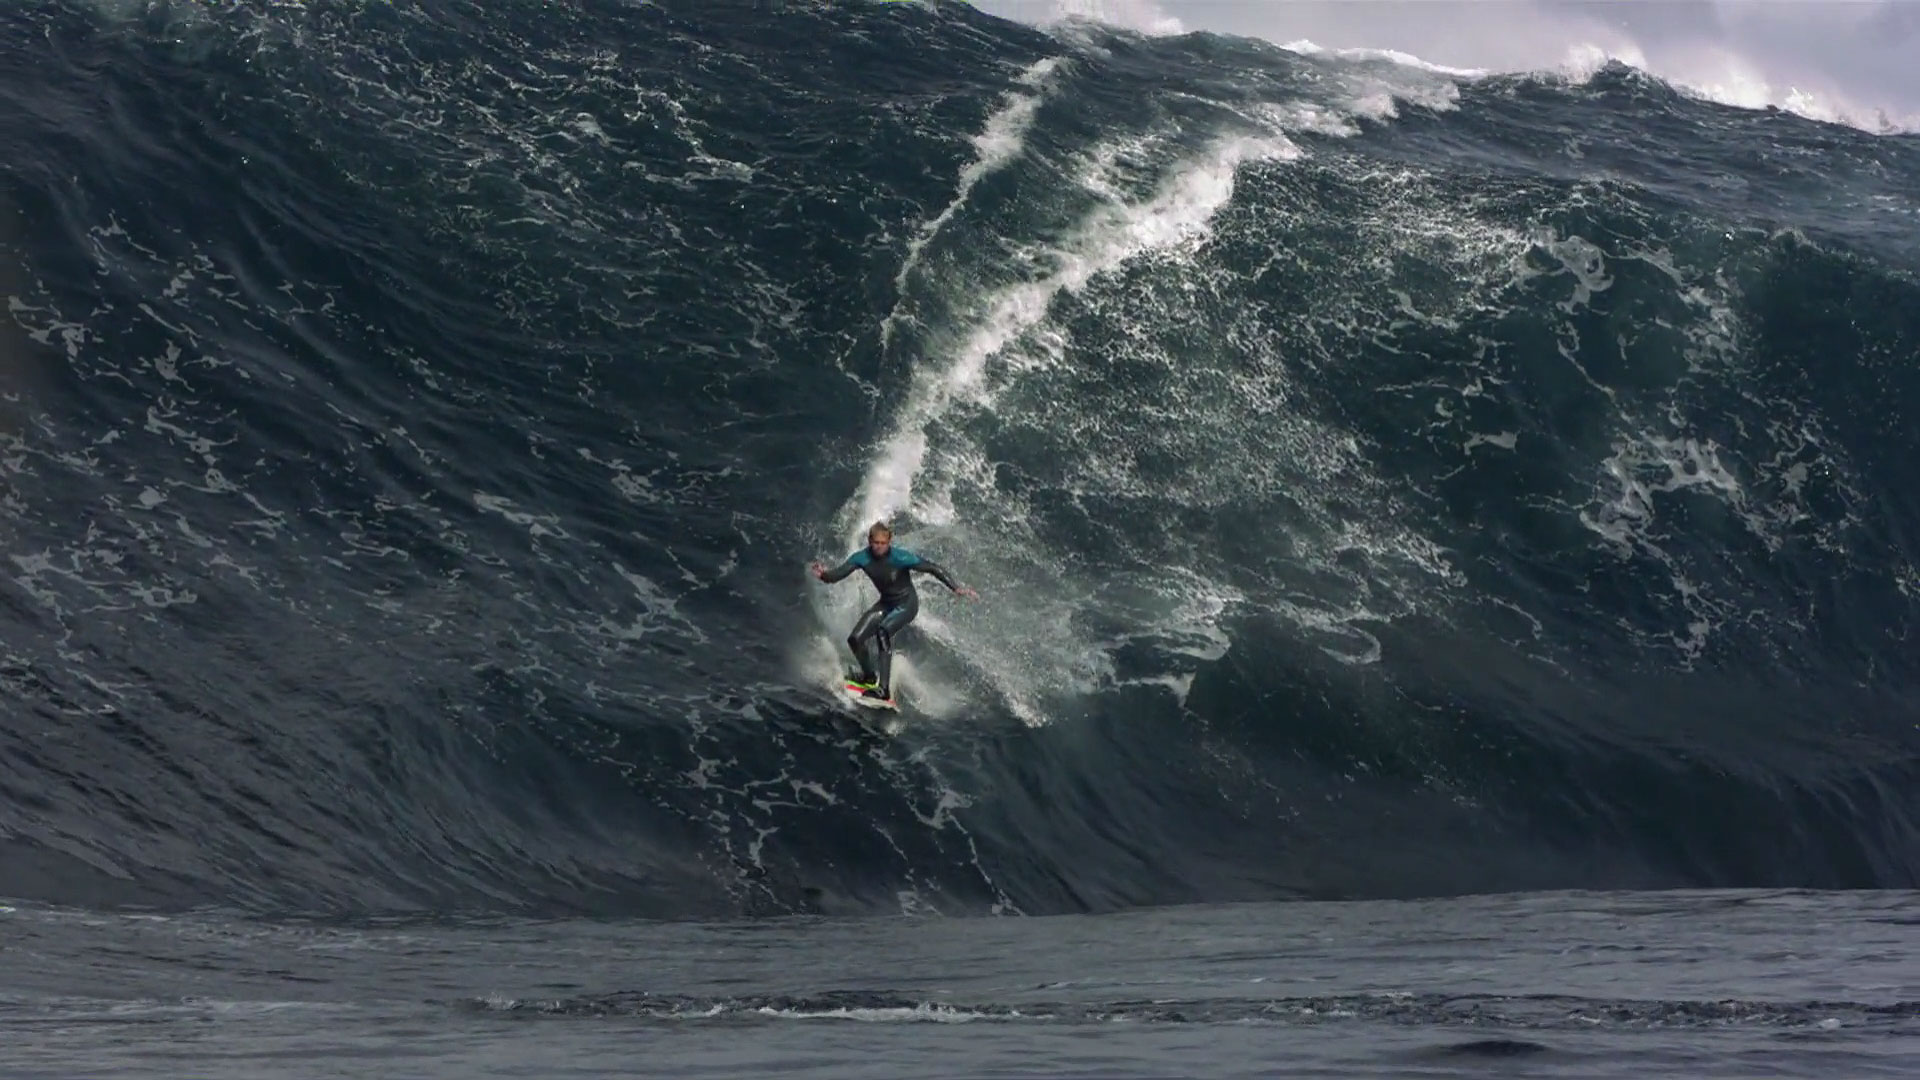 Caméra Phantom : mille images de surf par seconde